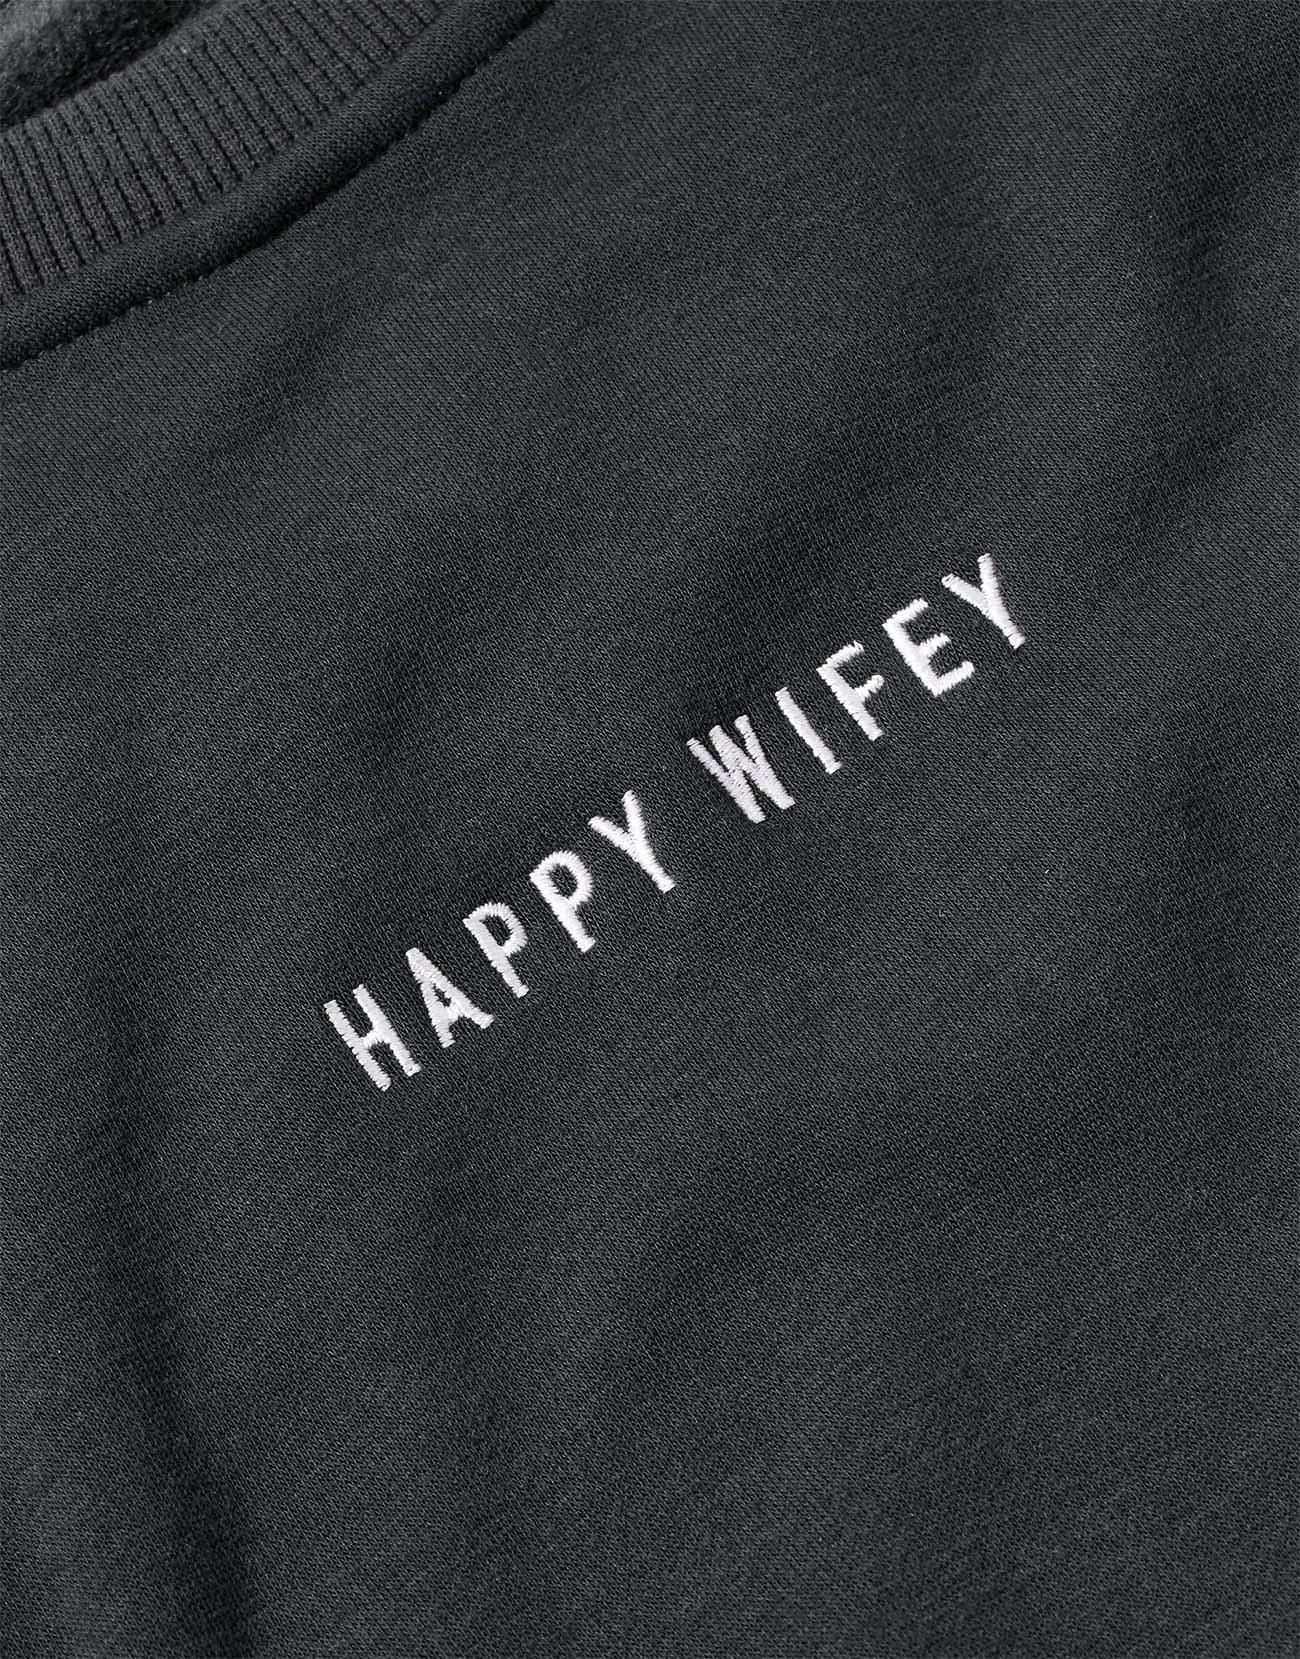 Sweatshirt Charcoal Black - Happy Wifey